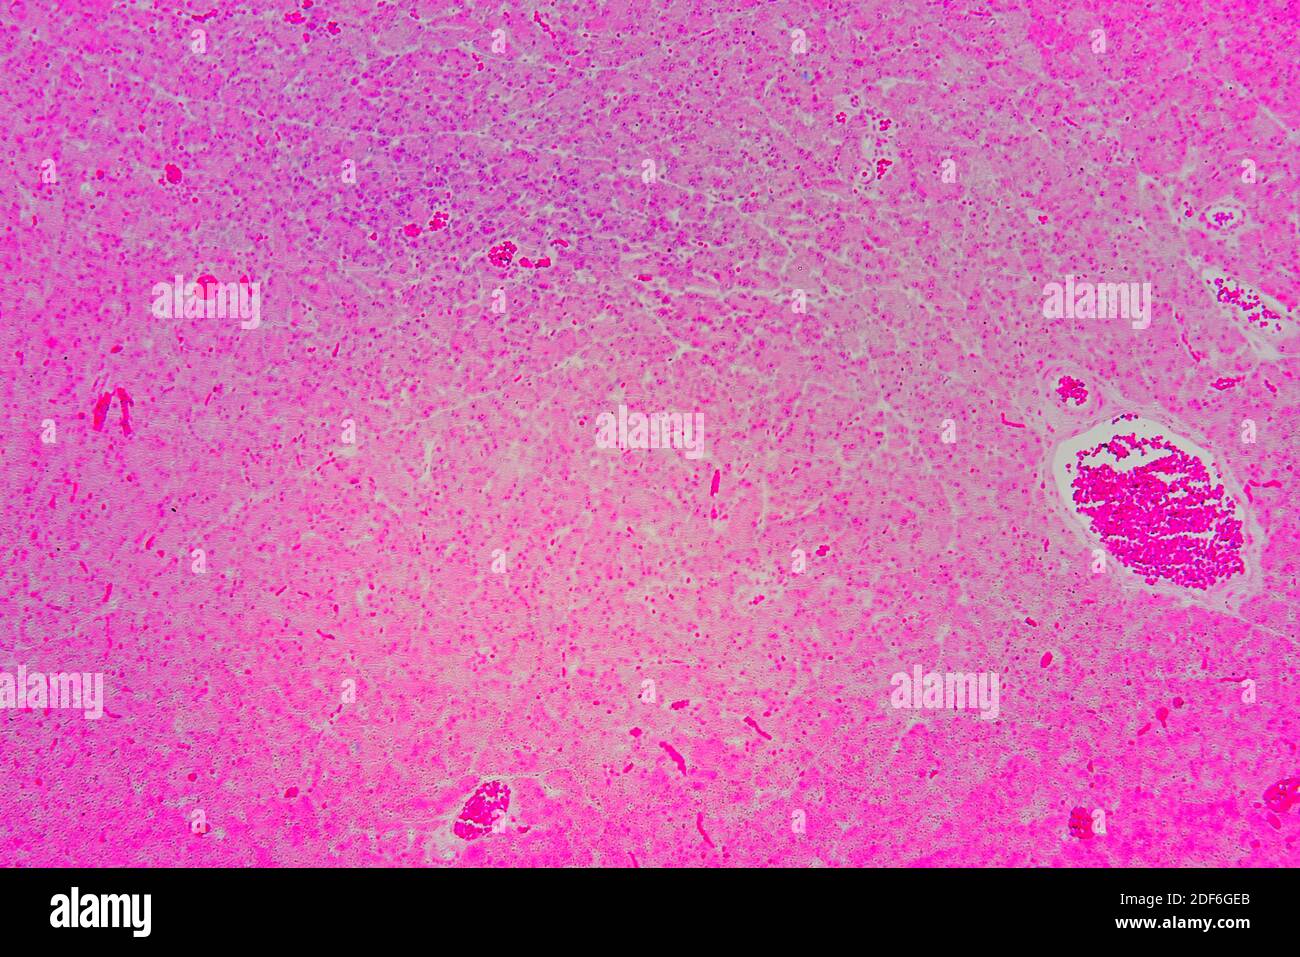 Pancreas umano con diabete mellito di tipo 1 che mostra acina, e isolette di Langerhans. Microscopio ottico X100. Foto Stock